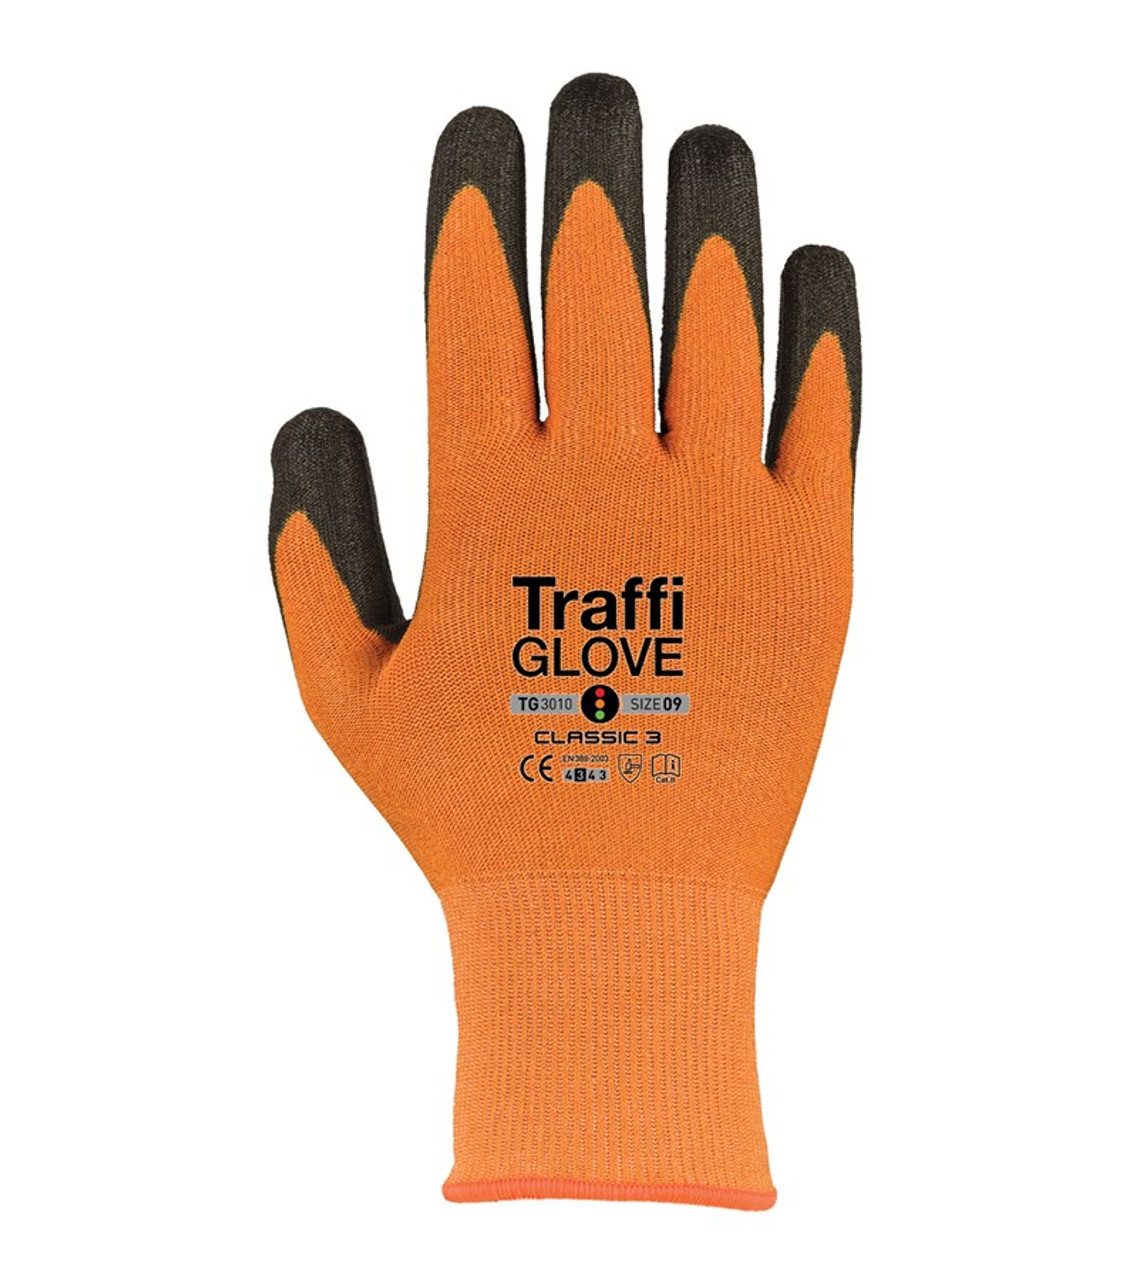 Traffi Glove TG3010 CLASSIC 3